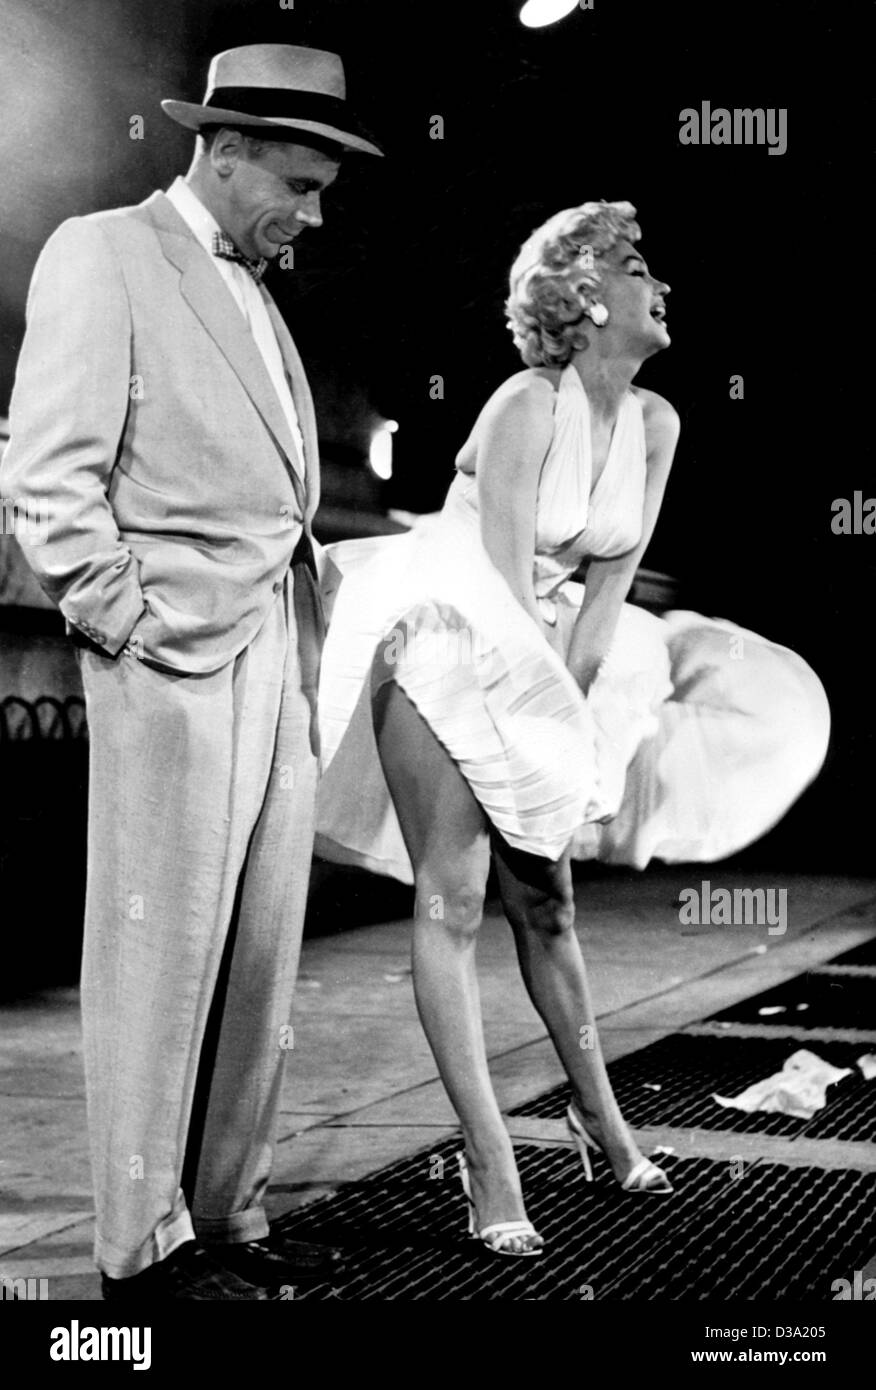 Afp) - Marilyn Monroe posant avec sa jupe sur un passage inférieur de  l'arbre à l'air, avec son partenaire du film Tom Ewell debout à côté  d'elle, une célèbre scène du film